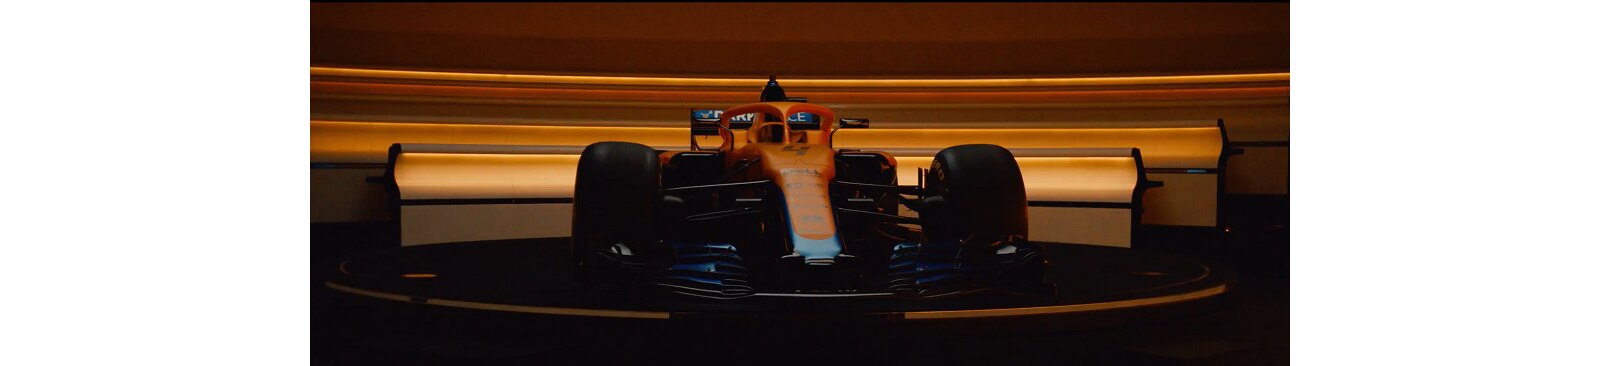 McLaren Racing Delivers Performance Improvements